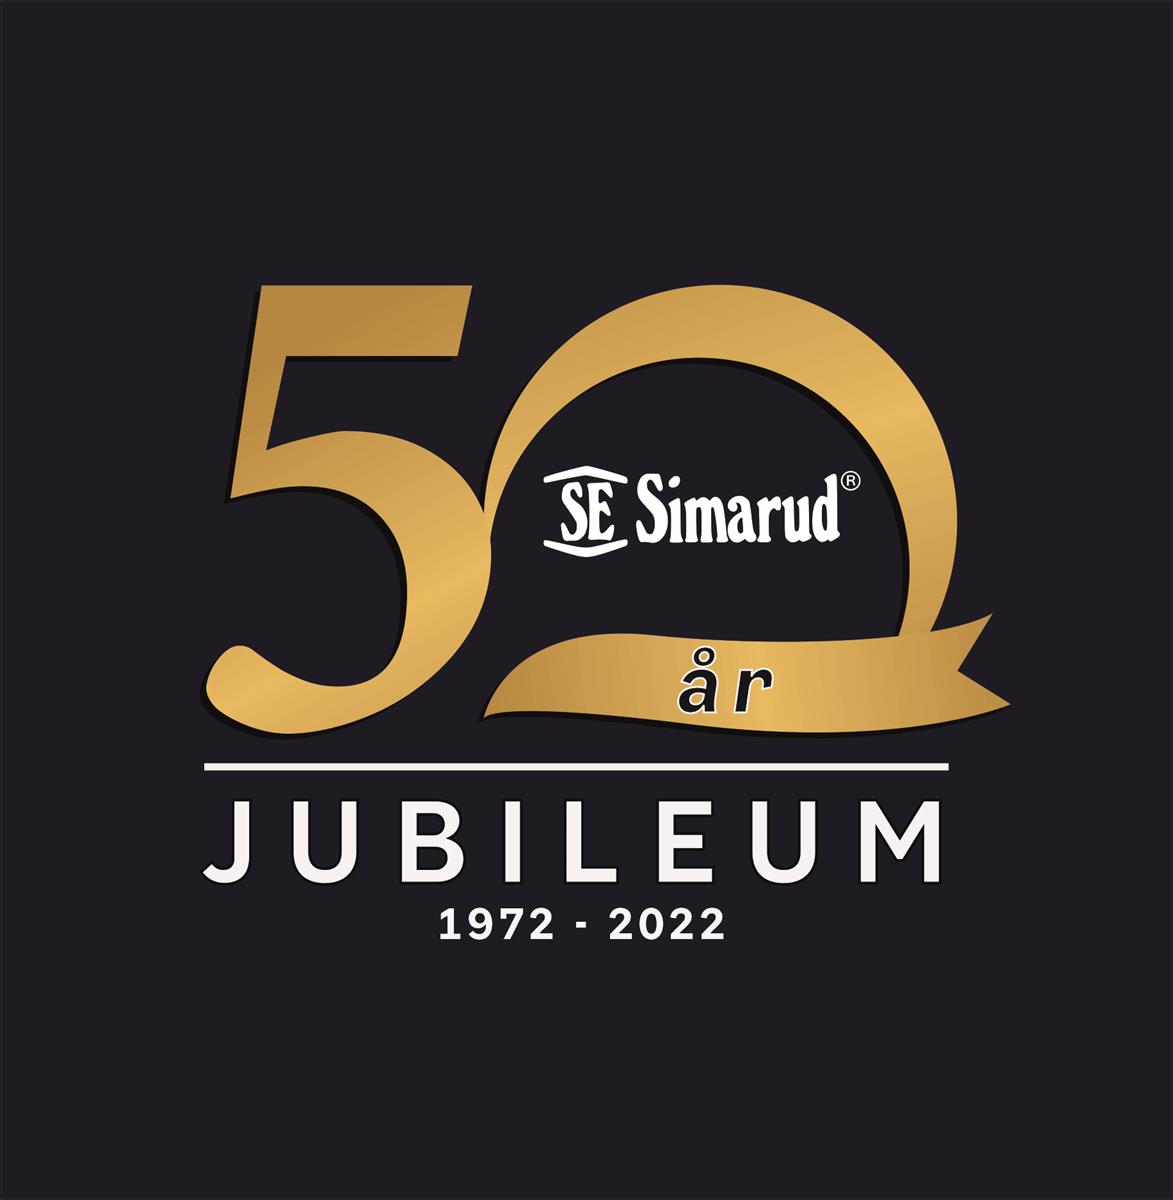  Jubileum 50 aar